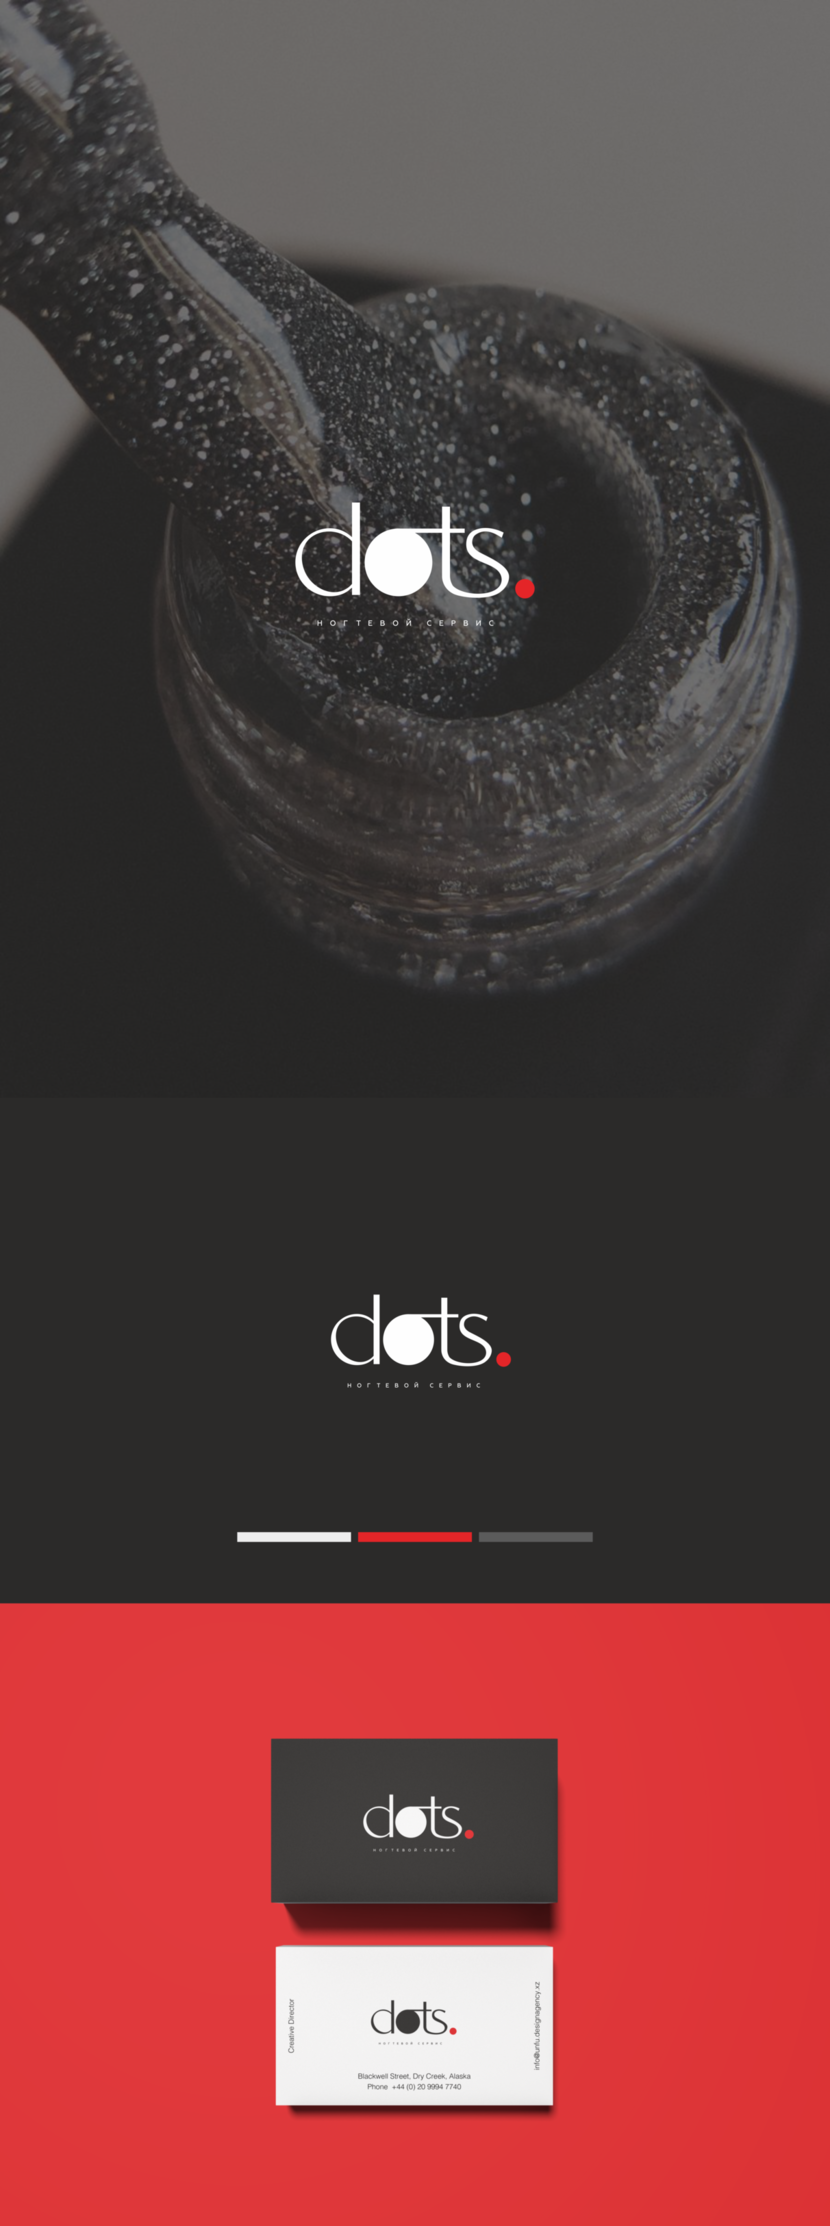 DOTS logo concept - Разработка логотипа для студии ногтевого сервиса 'dots'